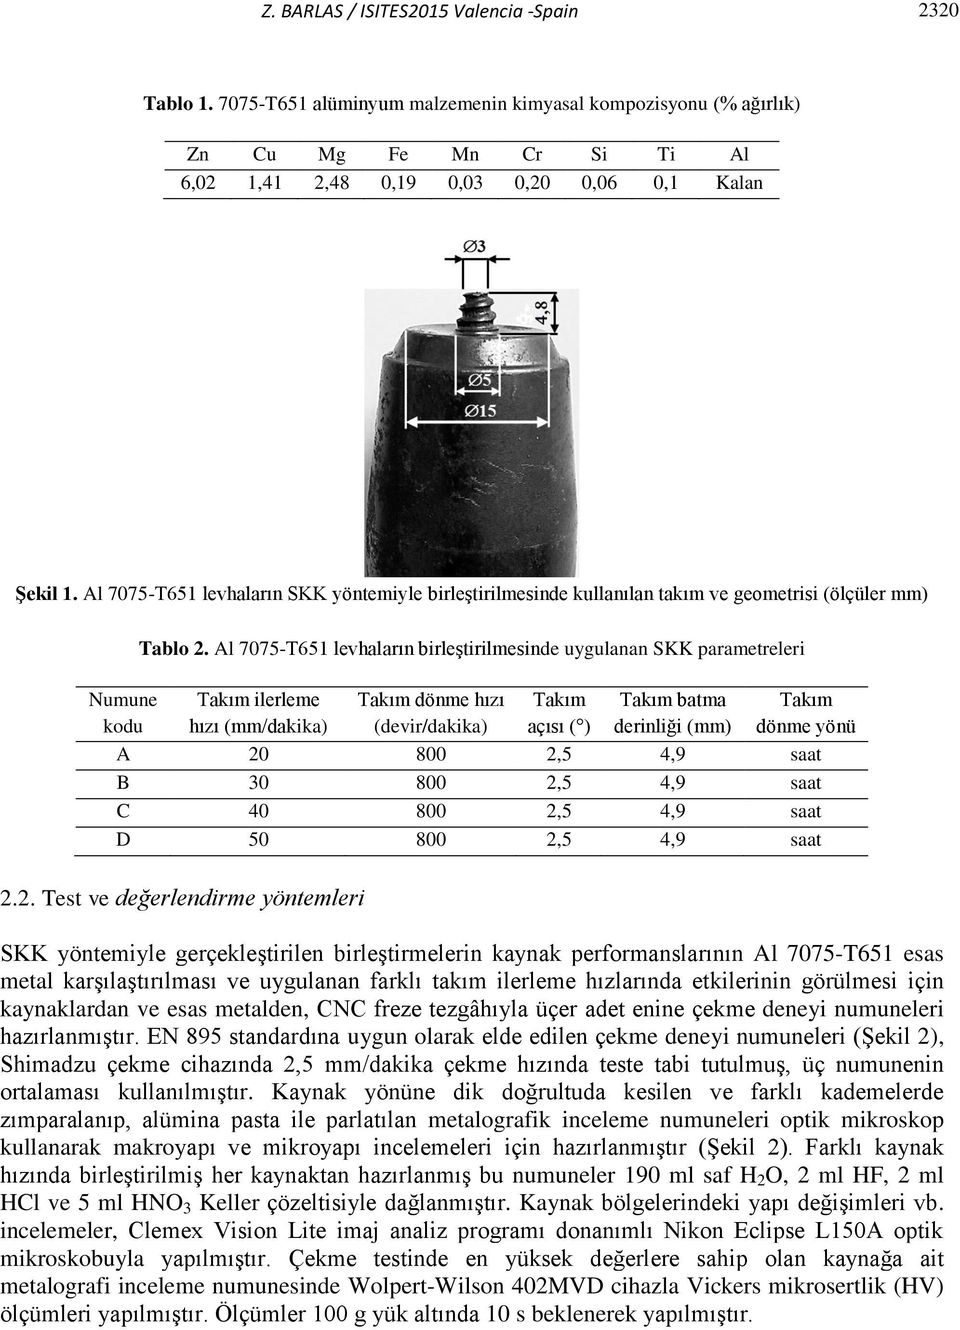 Al 7075-T651 levhaların birleştirilmesinde uygulanan SKK parametreleri Takım ilerleme hızı (mm/dakika) Takım dönme hızı (devir/dakika) Takım açısı ( ) Takım batma derinliği (mm) A 20 800 2,5 4,9 saat